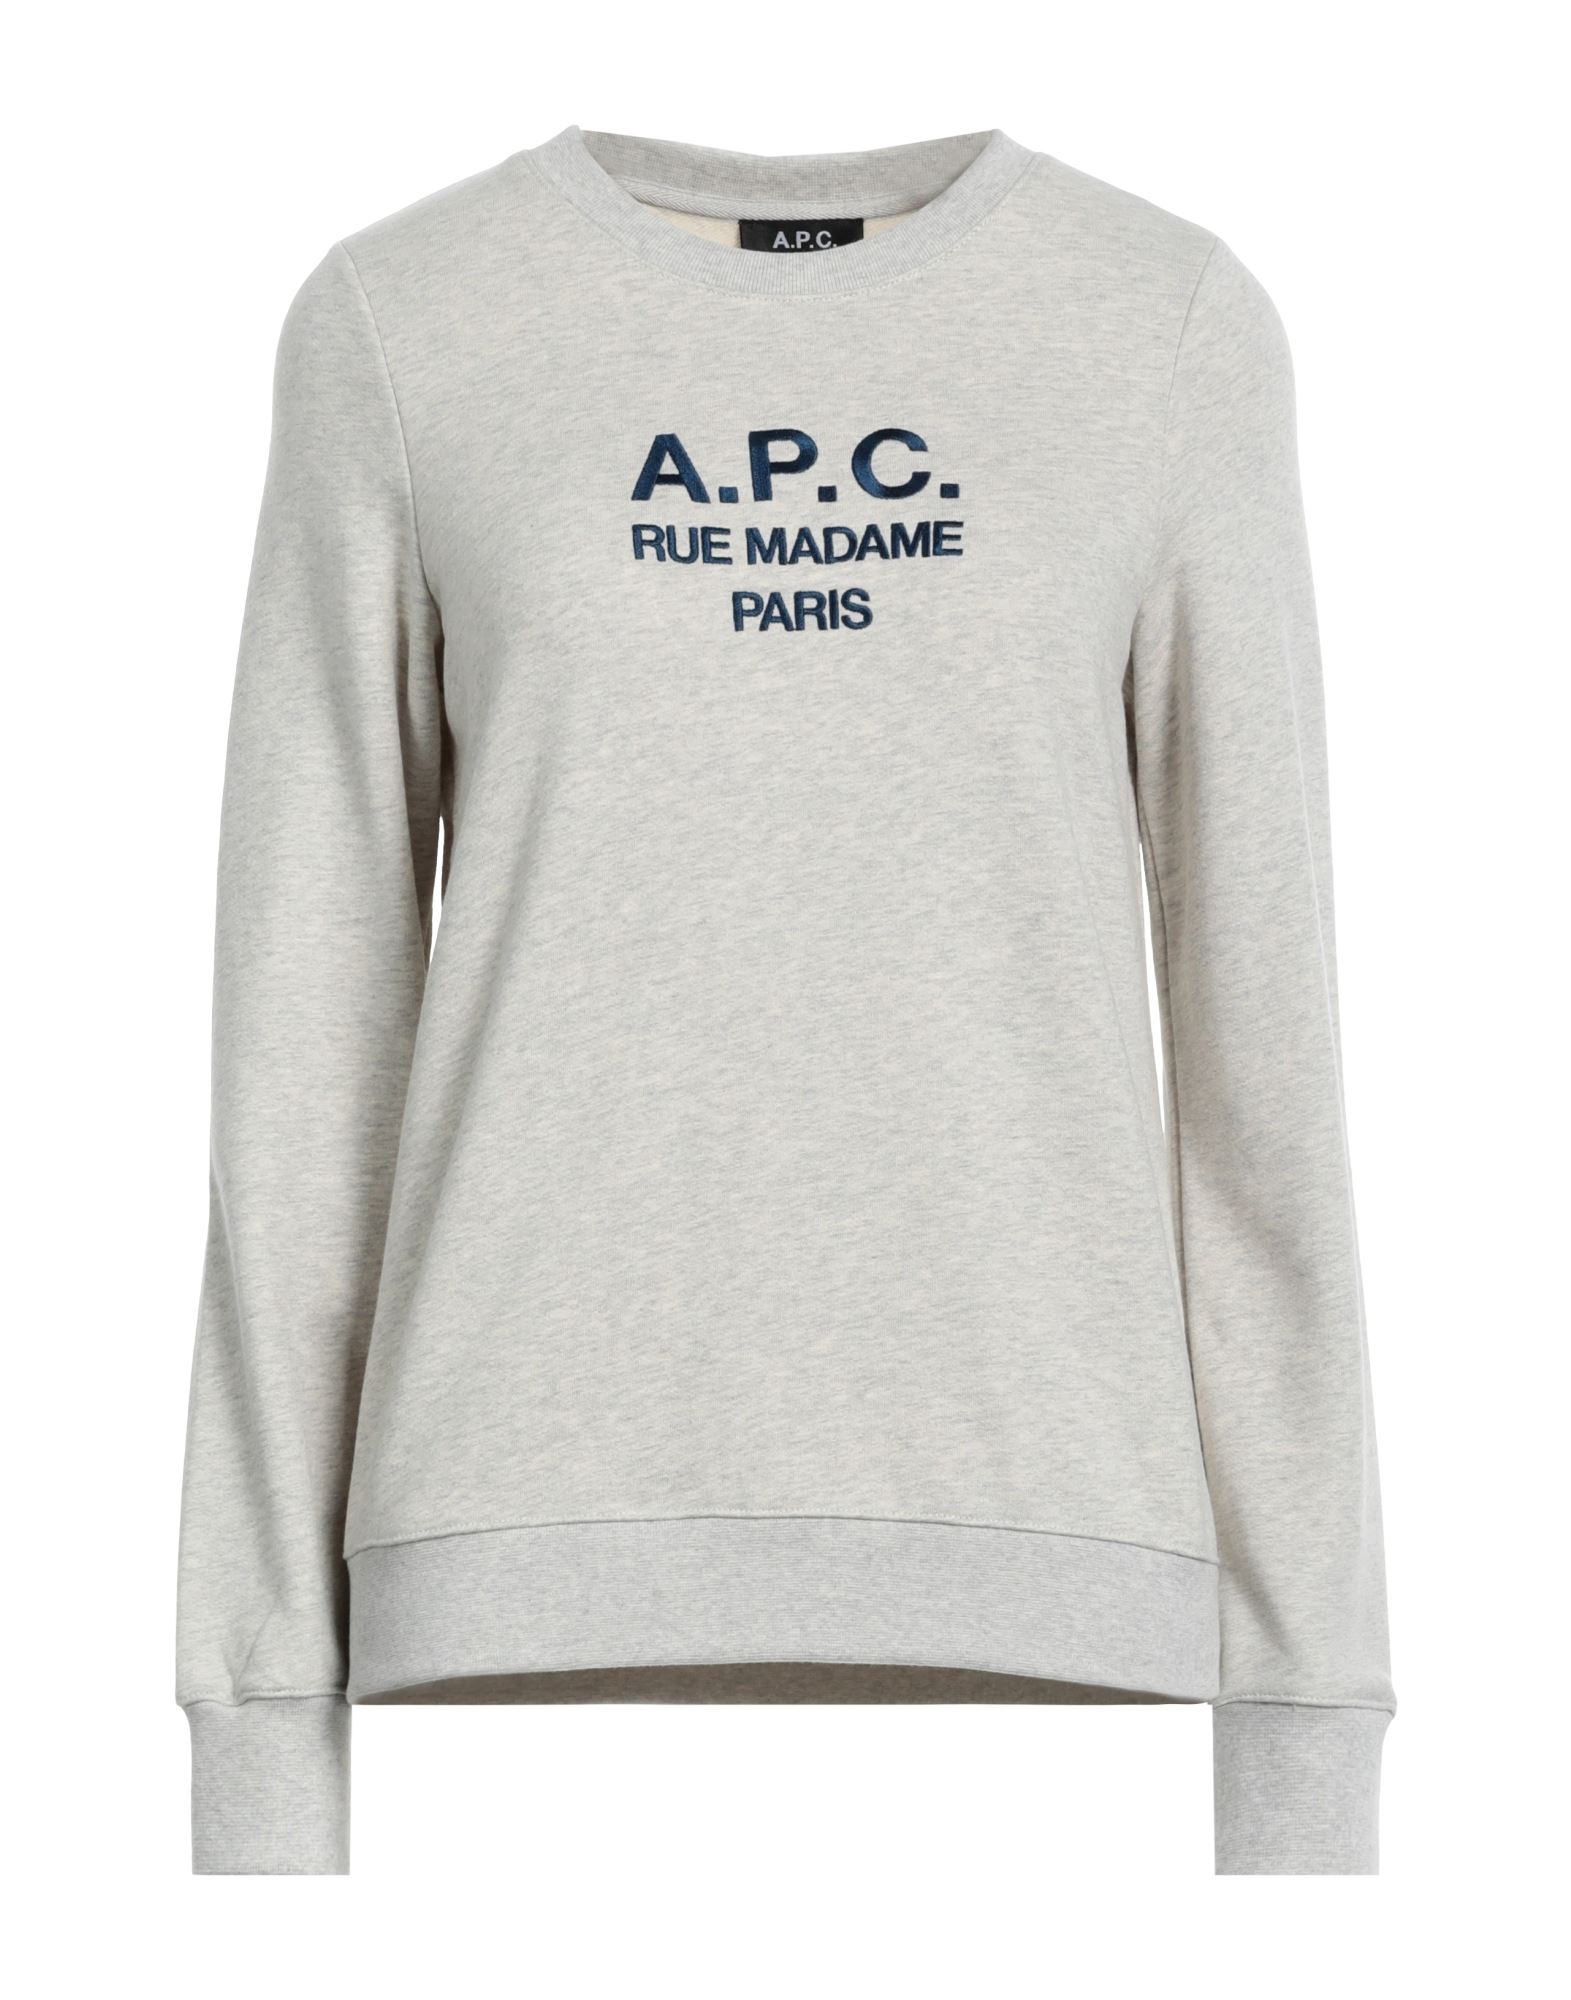 A.P.C. Sweatshirt Damen Hellgrau von A.P.C.